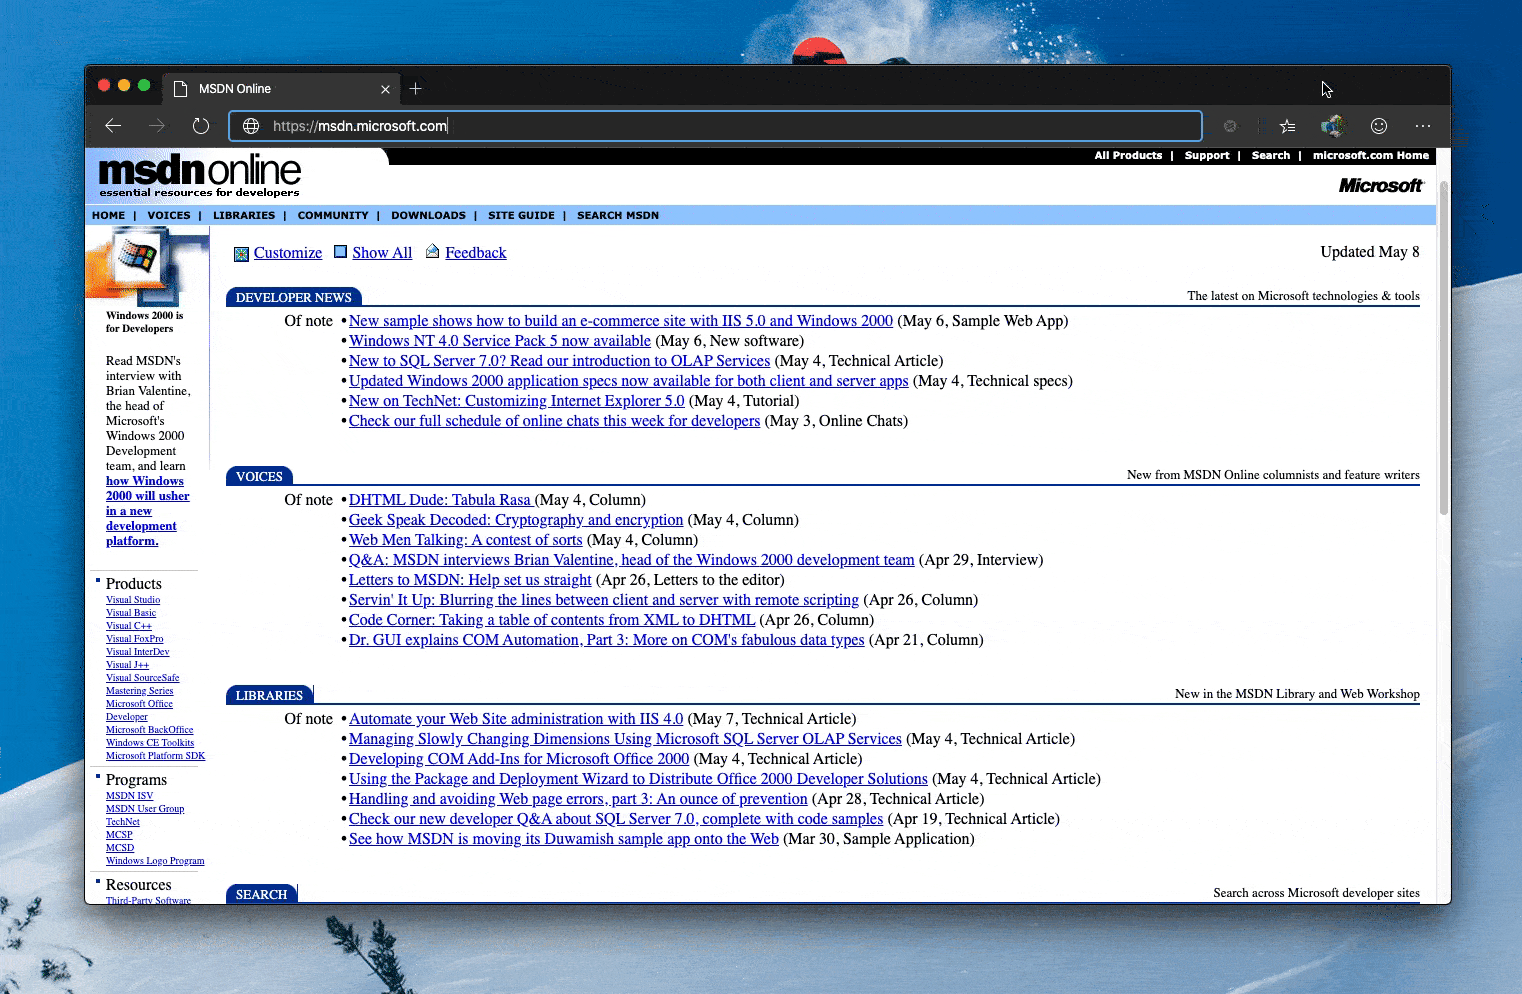 Captura de tela do MSDN Online em 1999